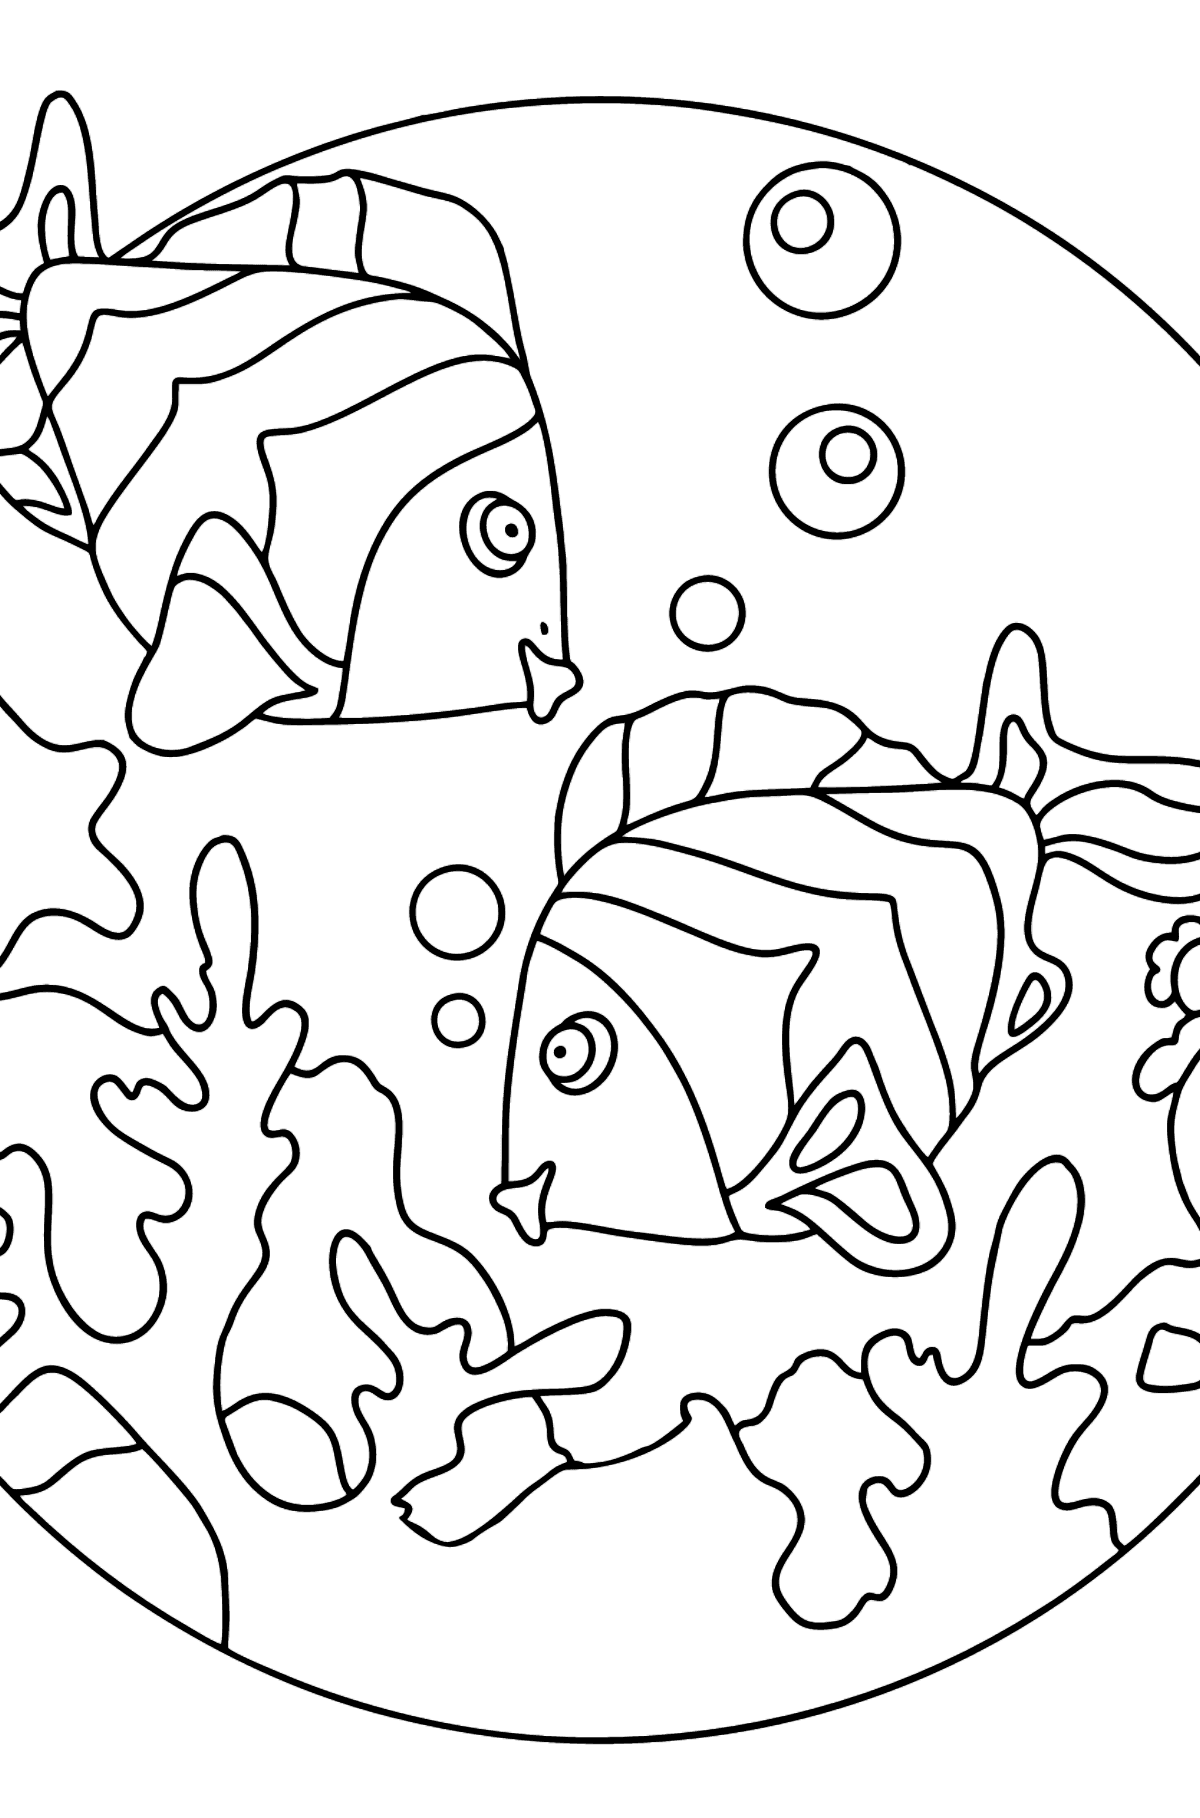 Dibujo para Colorear - Los Peces están Nadando Juntos - Dibujos para Colorear para Niños